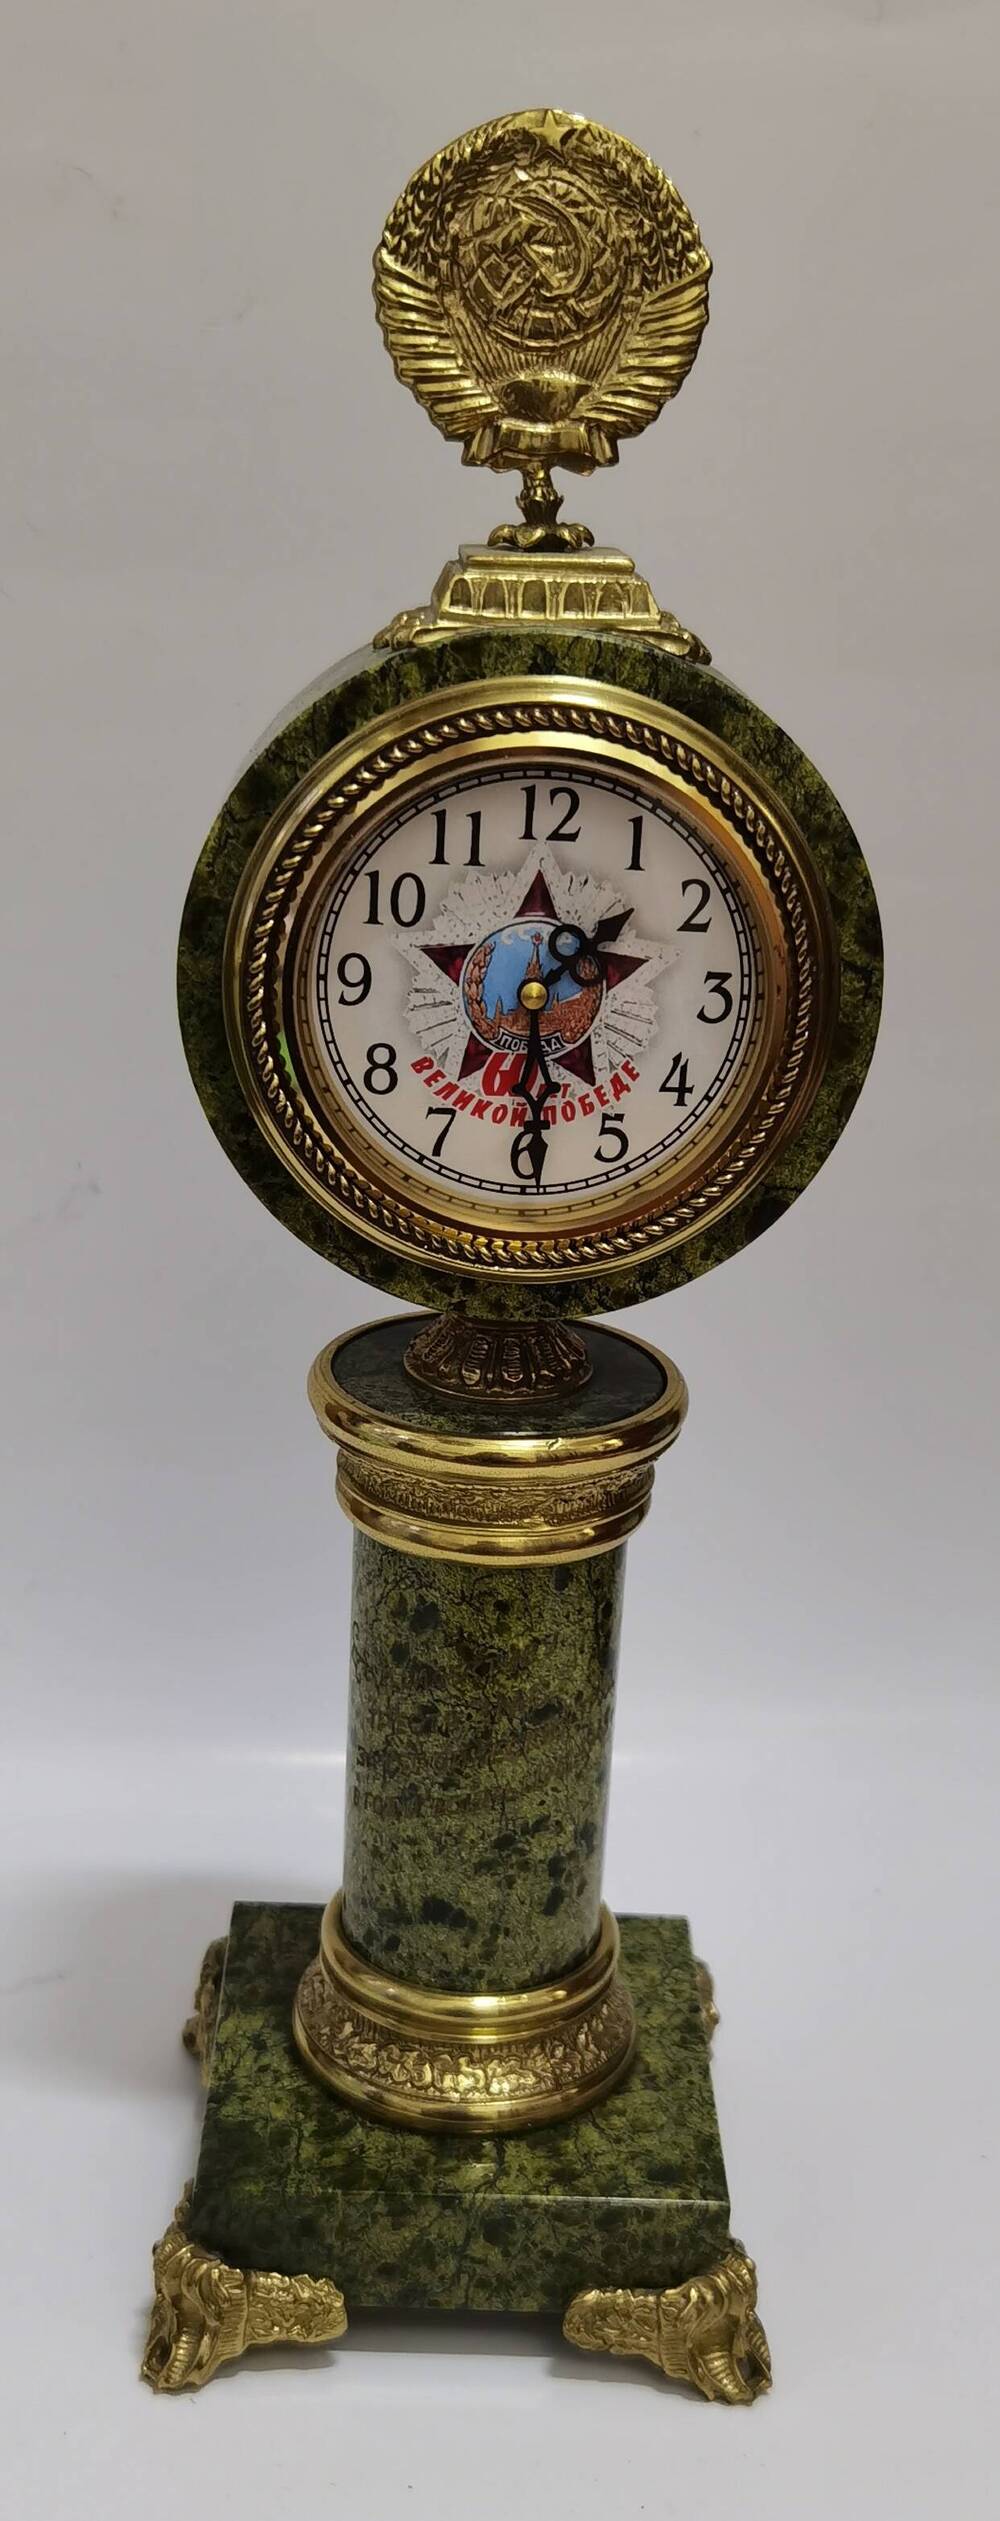 Часы настольные механические, в корпусе из полированного змеевика, посвященные 60-летию Великой Победы.